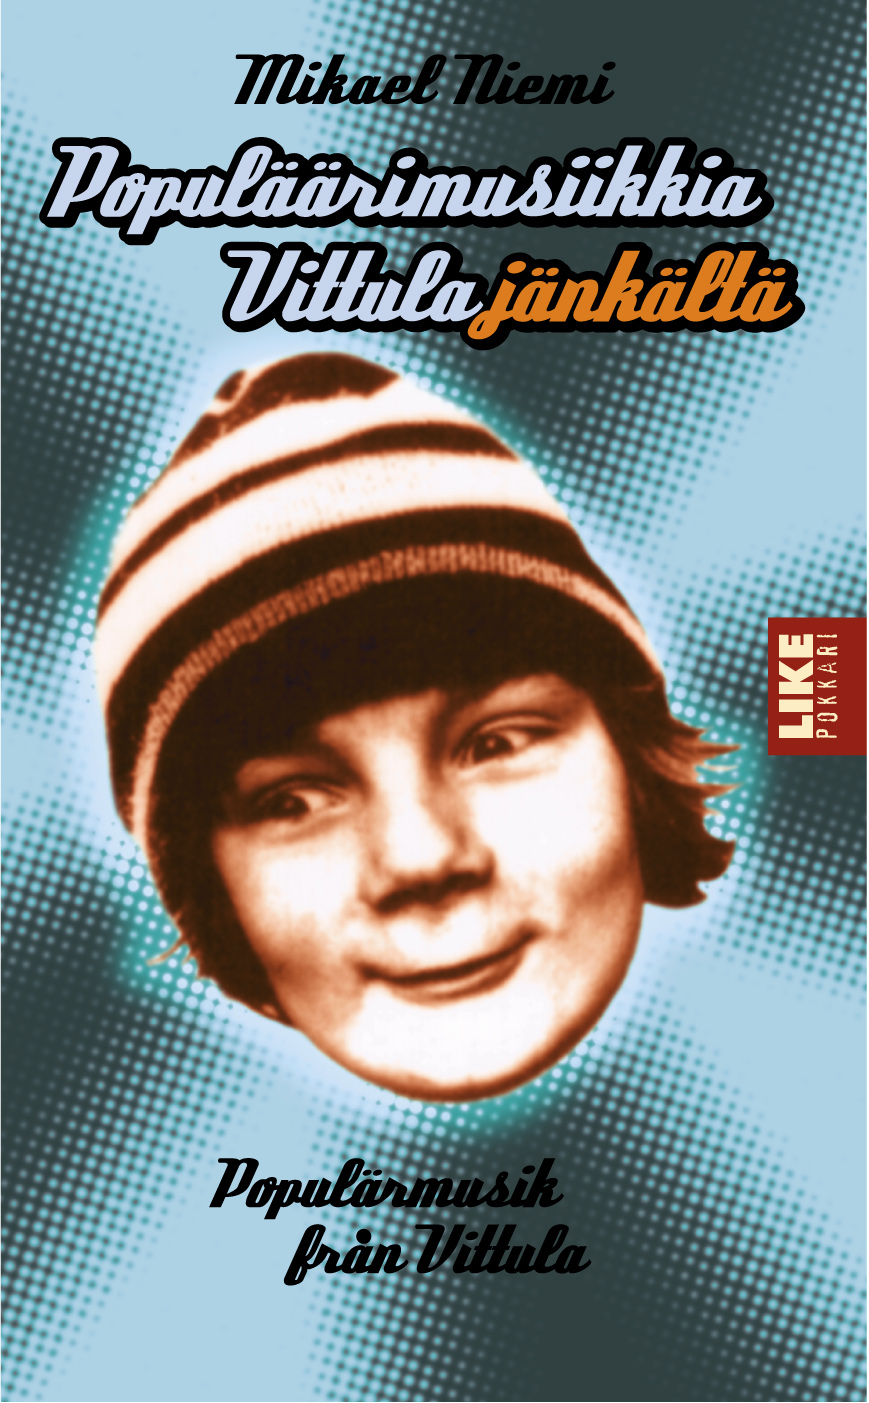 Populäärimusiikkia Vittulajänkältä (Paperback, Finnish language, 1999, LIKE)